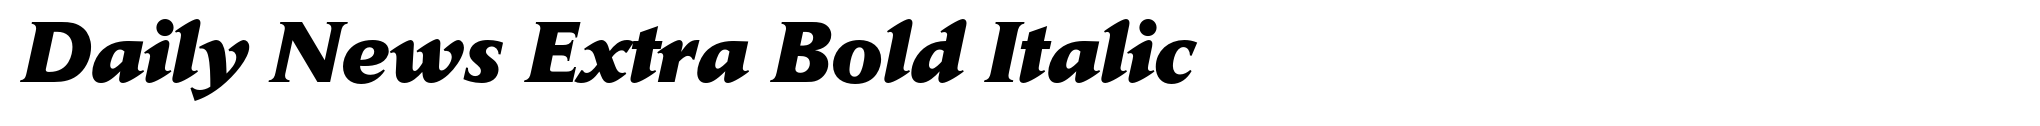 Daily News Extra Bold Italic image